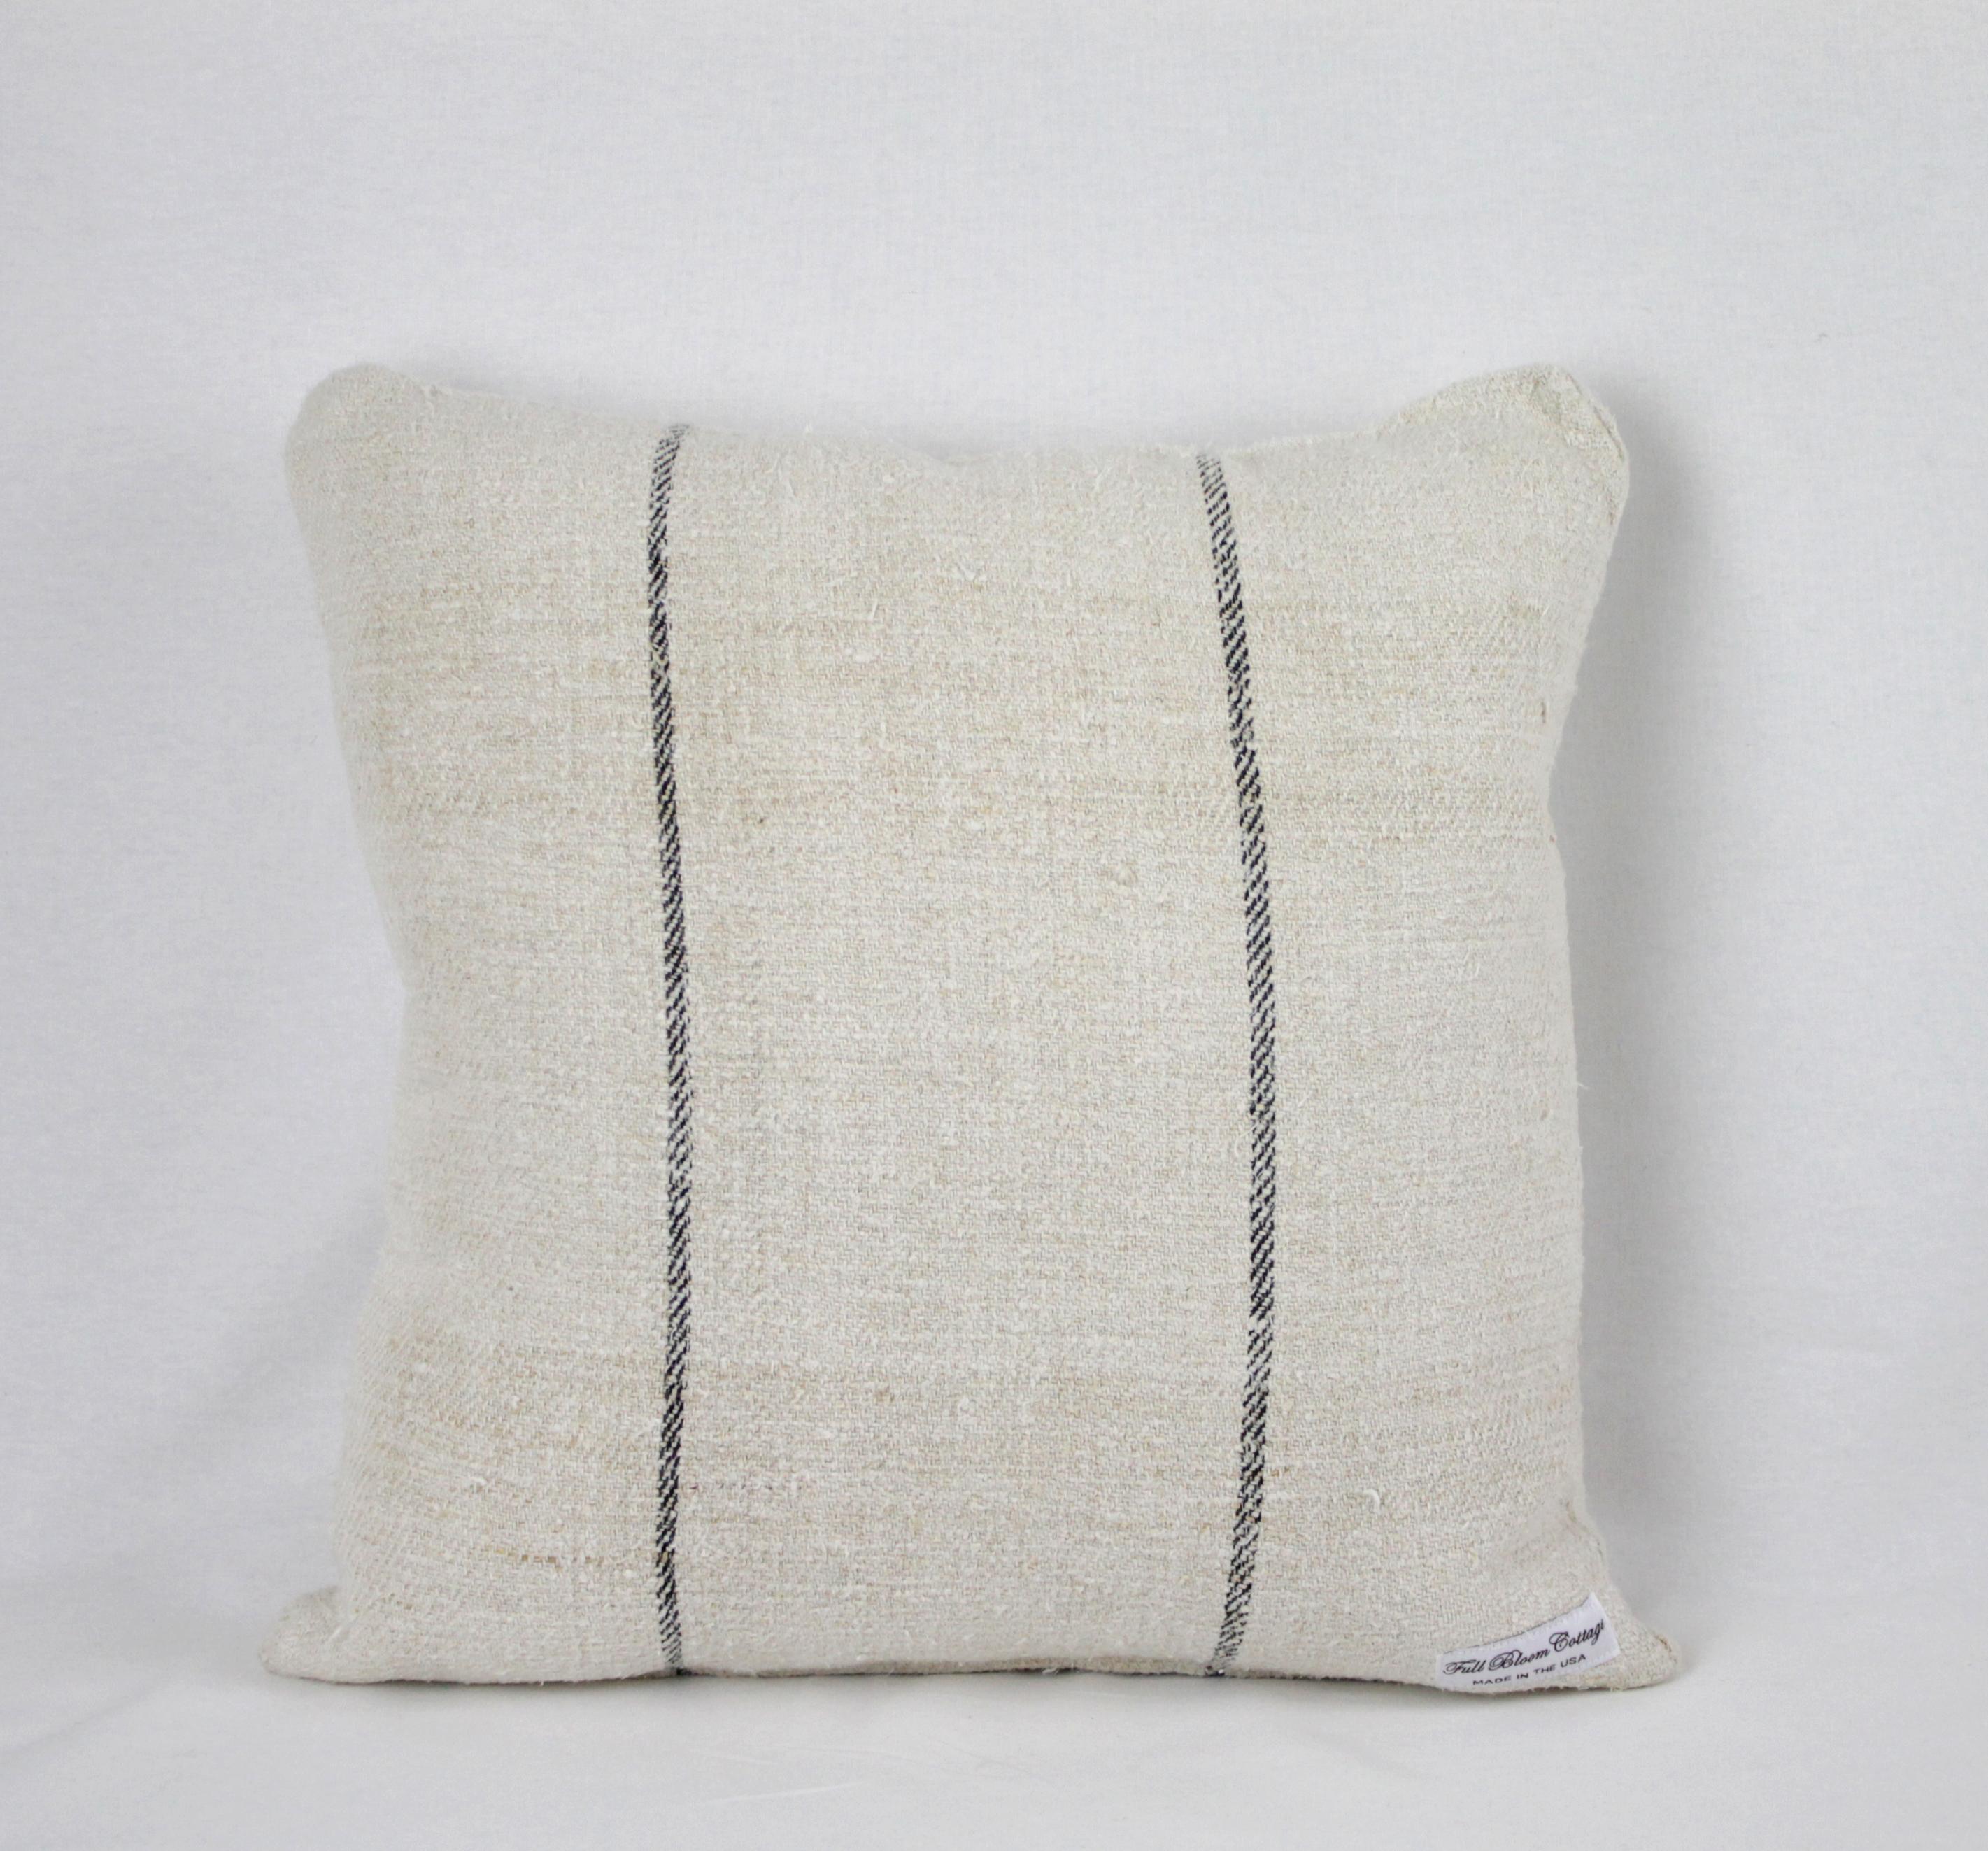 Antique Nubby 19th Century European Black Stripe Grain Sack Pillows 1